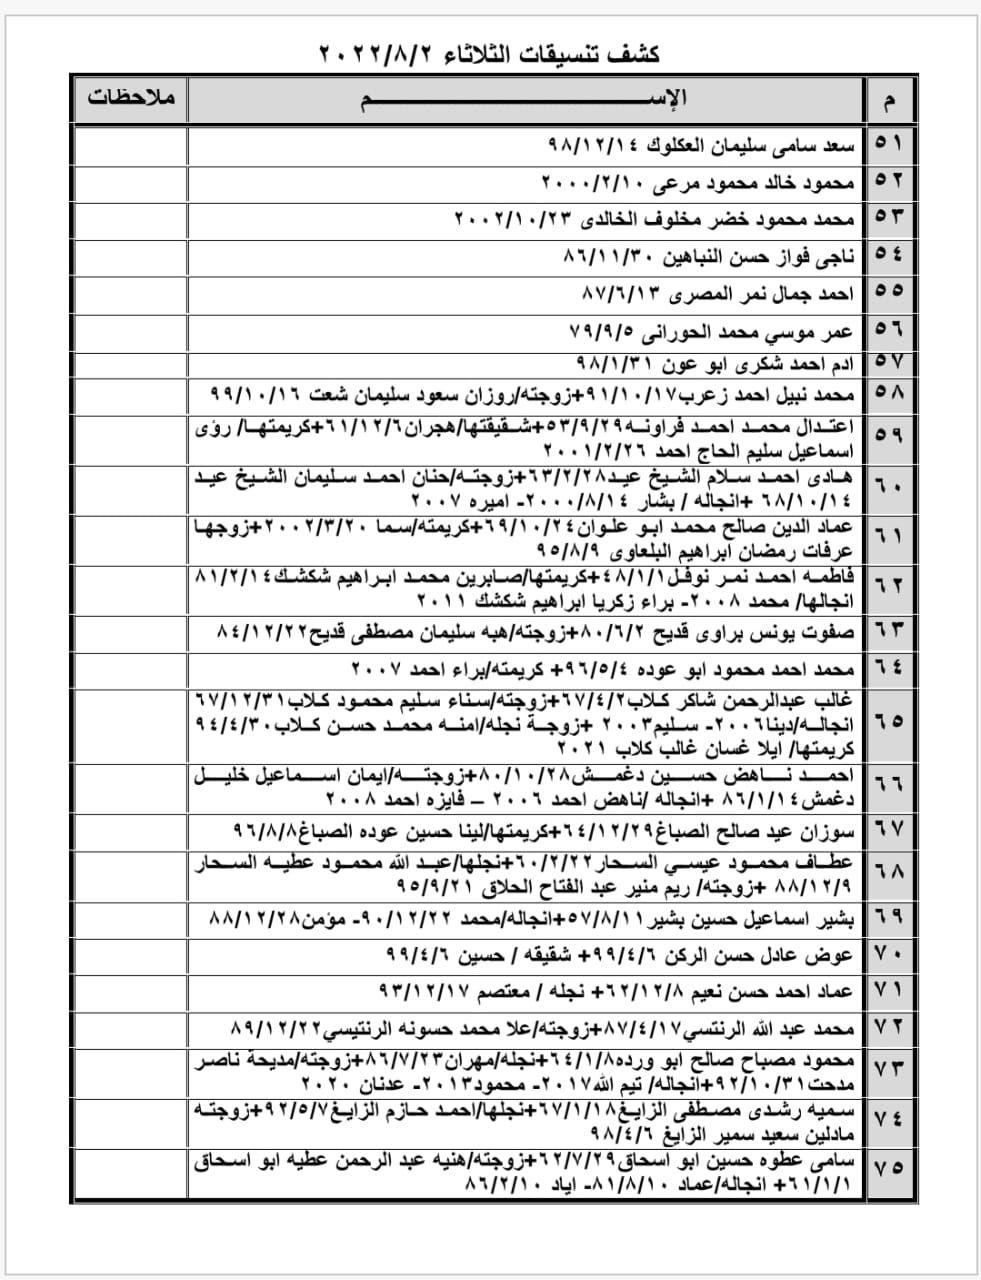 بالأسماء: وصول كشف تنسيقات مصرية للسفر عبر معبر رفح يوم الثلاثاء 2 أغسطس 2022